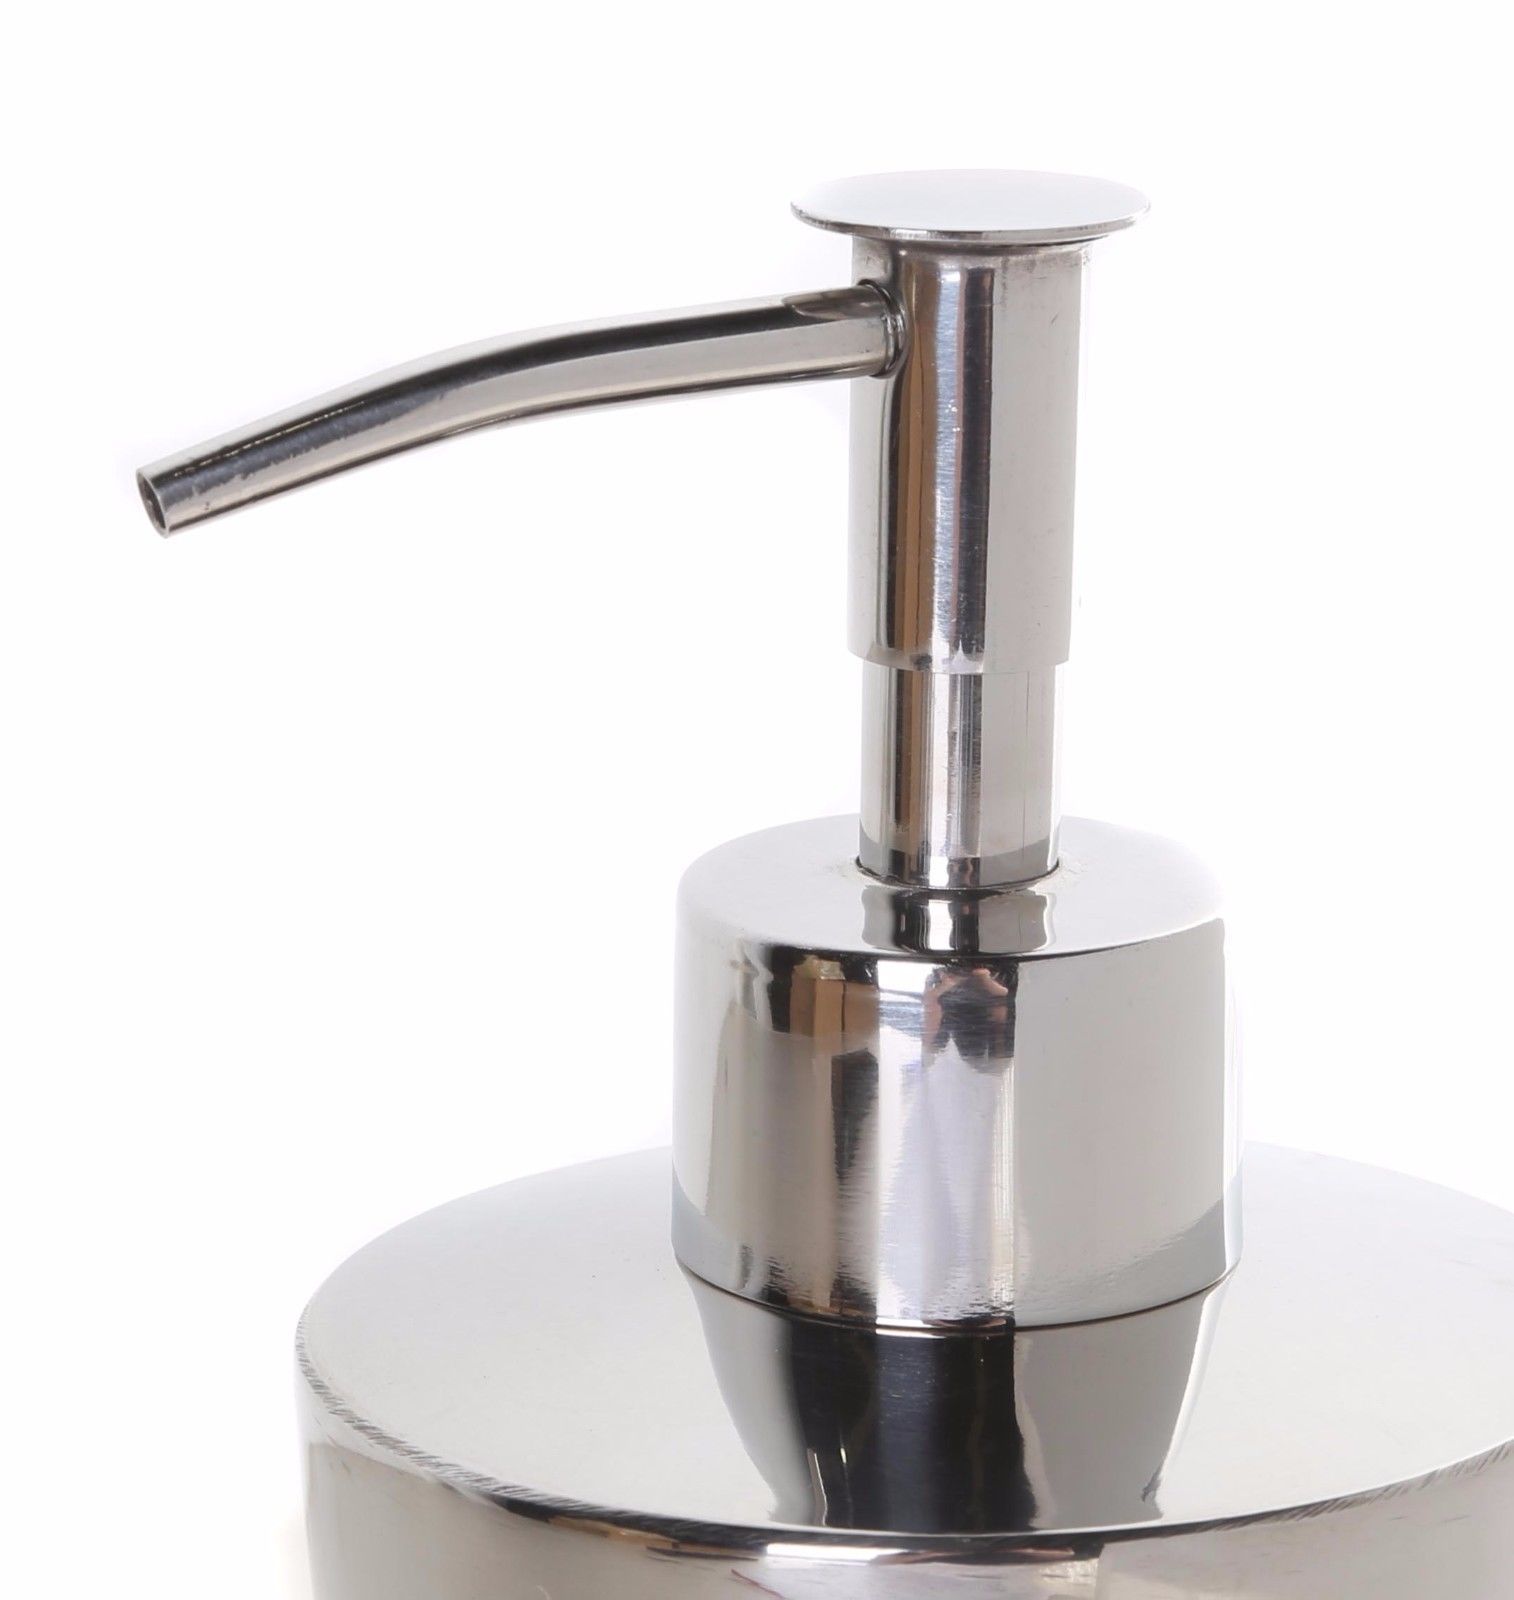 MILENO Stainless Steel Soap Dispenser 17cm